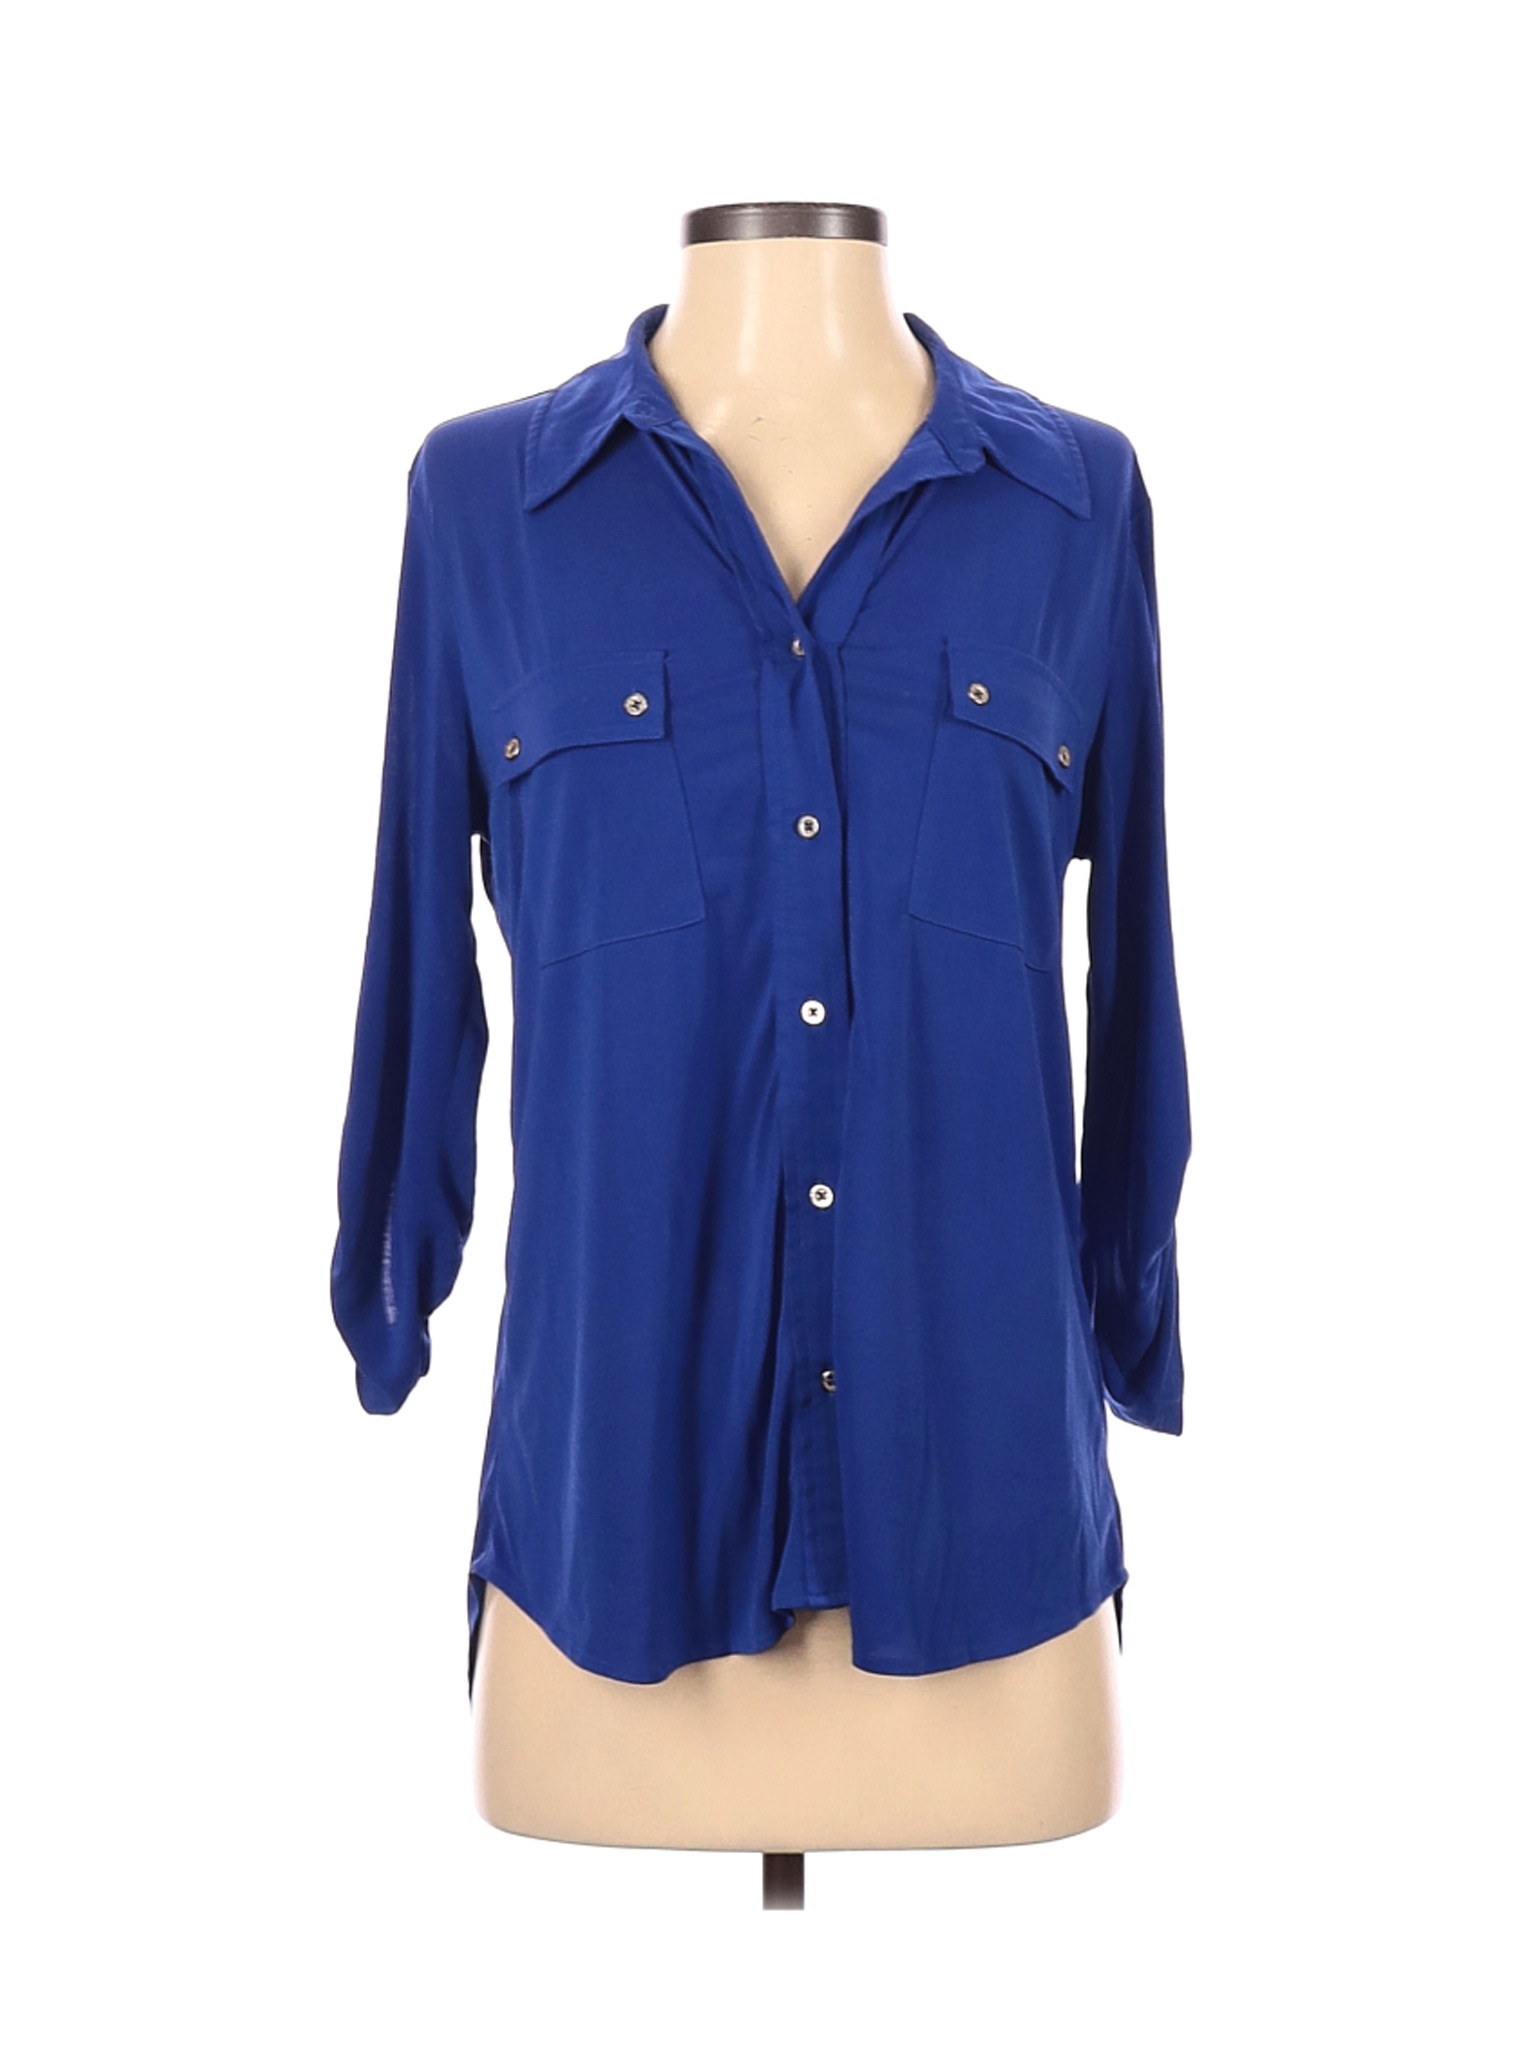 Ellen Tracy Women Blue Long Sleeve Blouse S | eBay